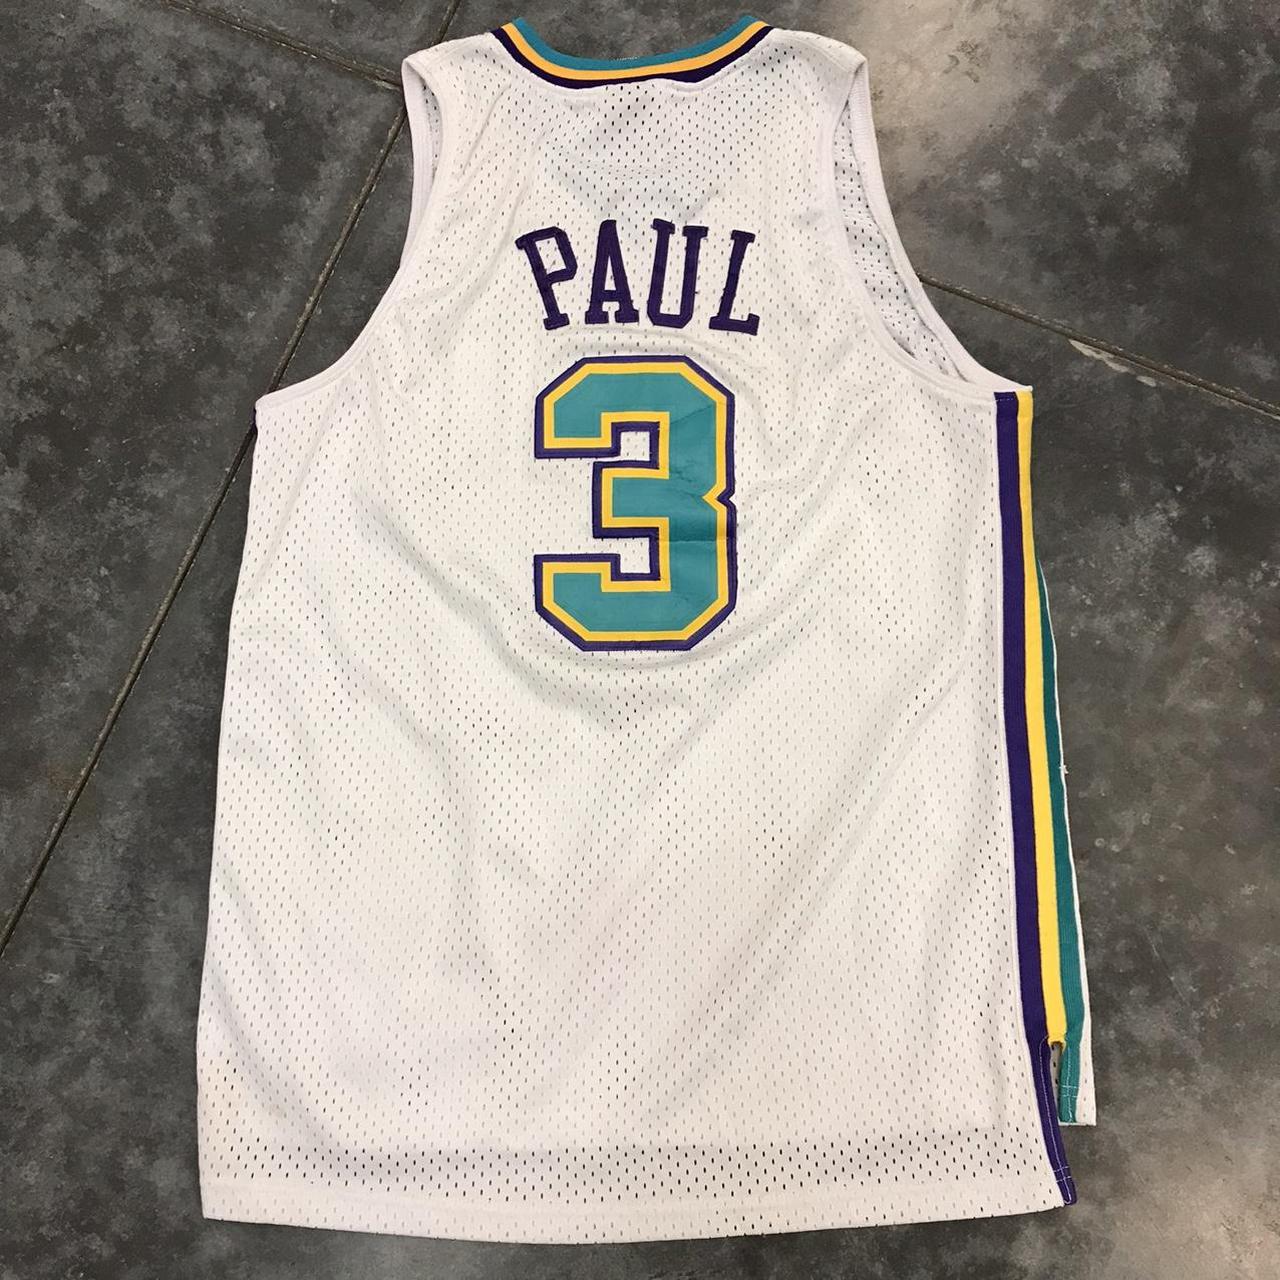 New Orleans Hornets Chris Paul Jersey Adidas Made - Depop